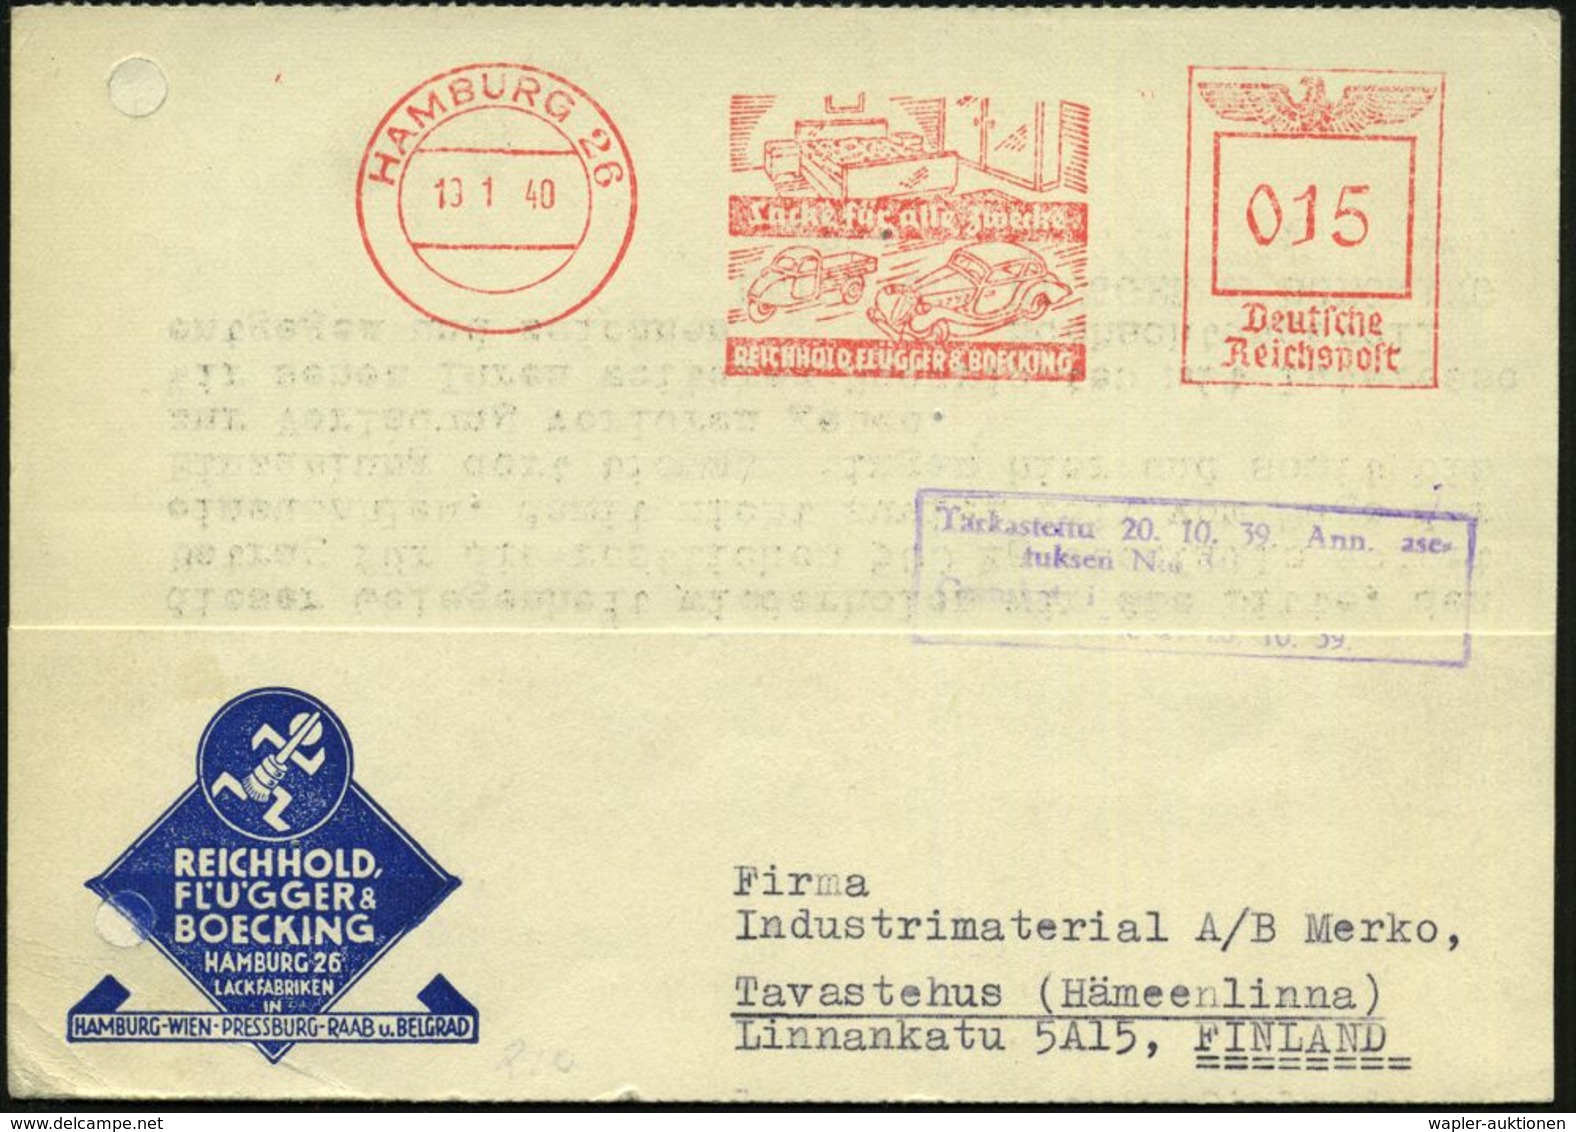 HAMBURG 26/ Lacke Für Alle Zwecke/ REICHHOLD,FLÜGGER & BOECKING 1940 (19.1.) AFS 015 Pf. = Dreirad-Klein-LKW, Typ "Golia - Camion